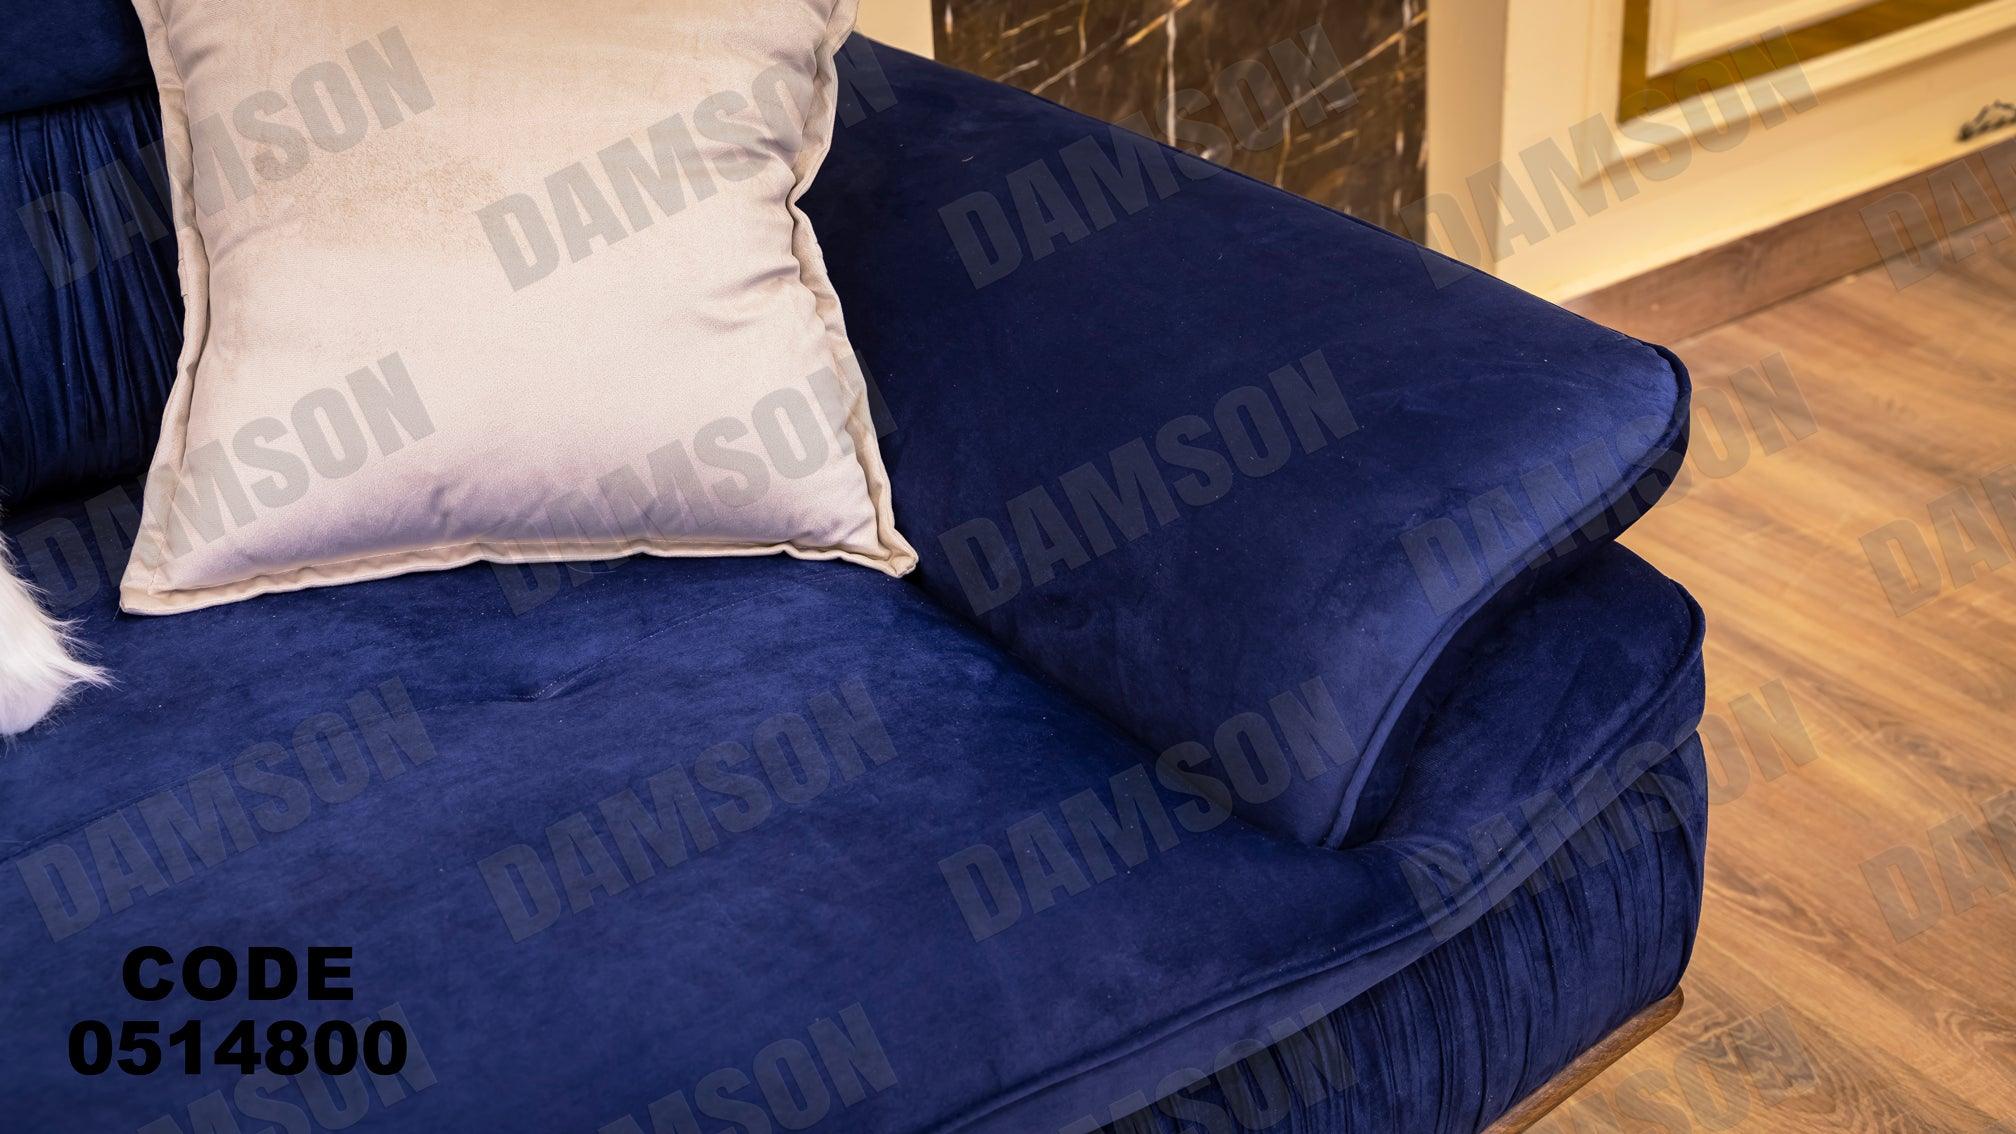 انترية سرير 148 - Damson Furnitureانترية سرير 148